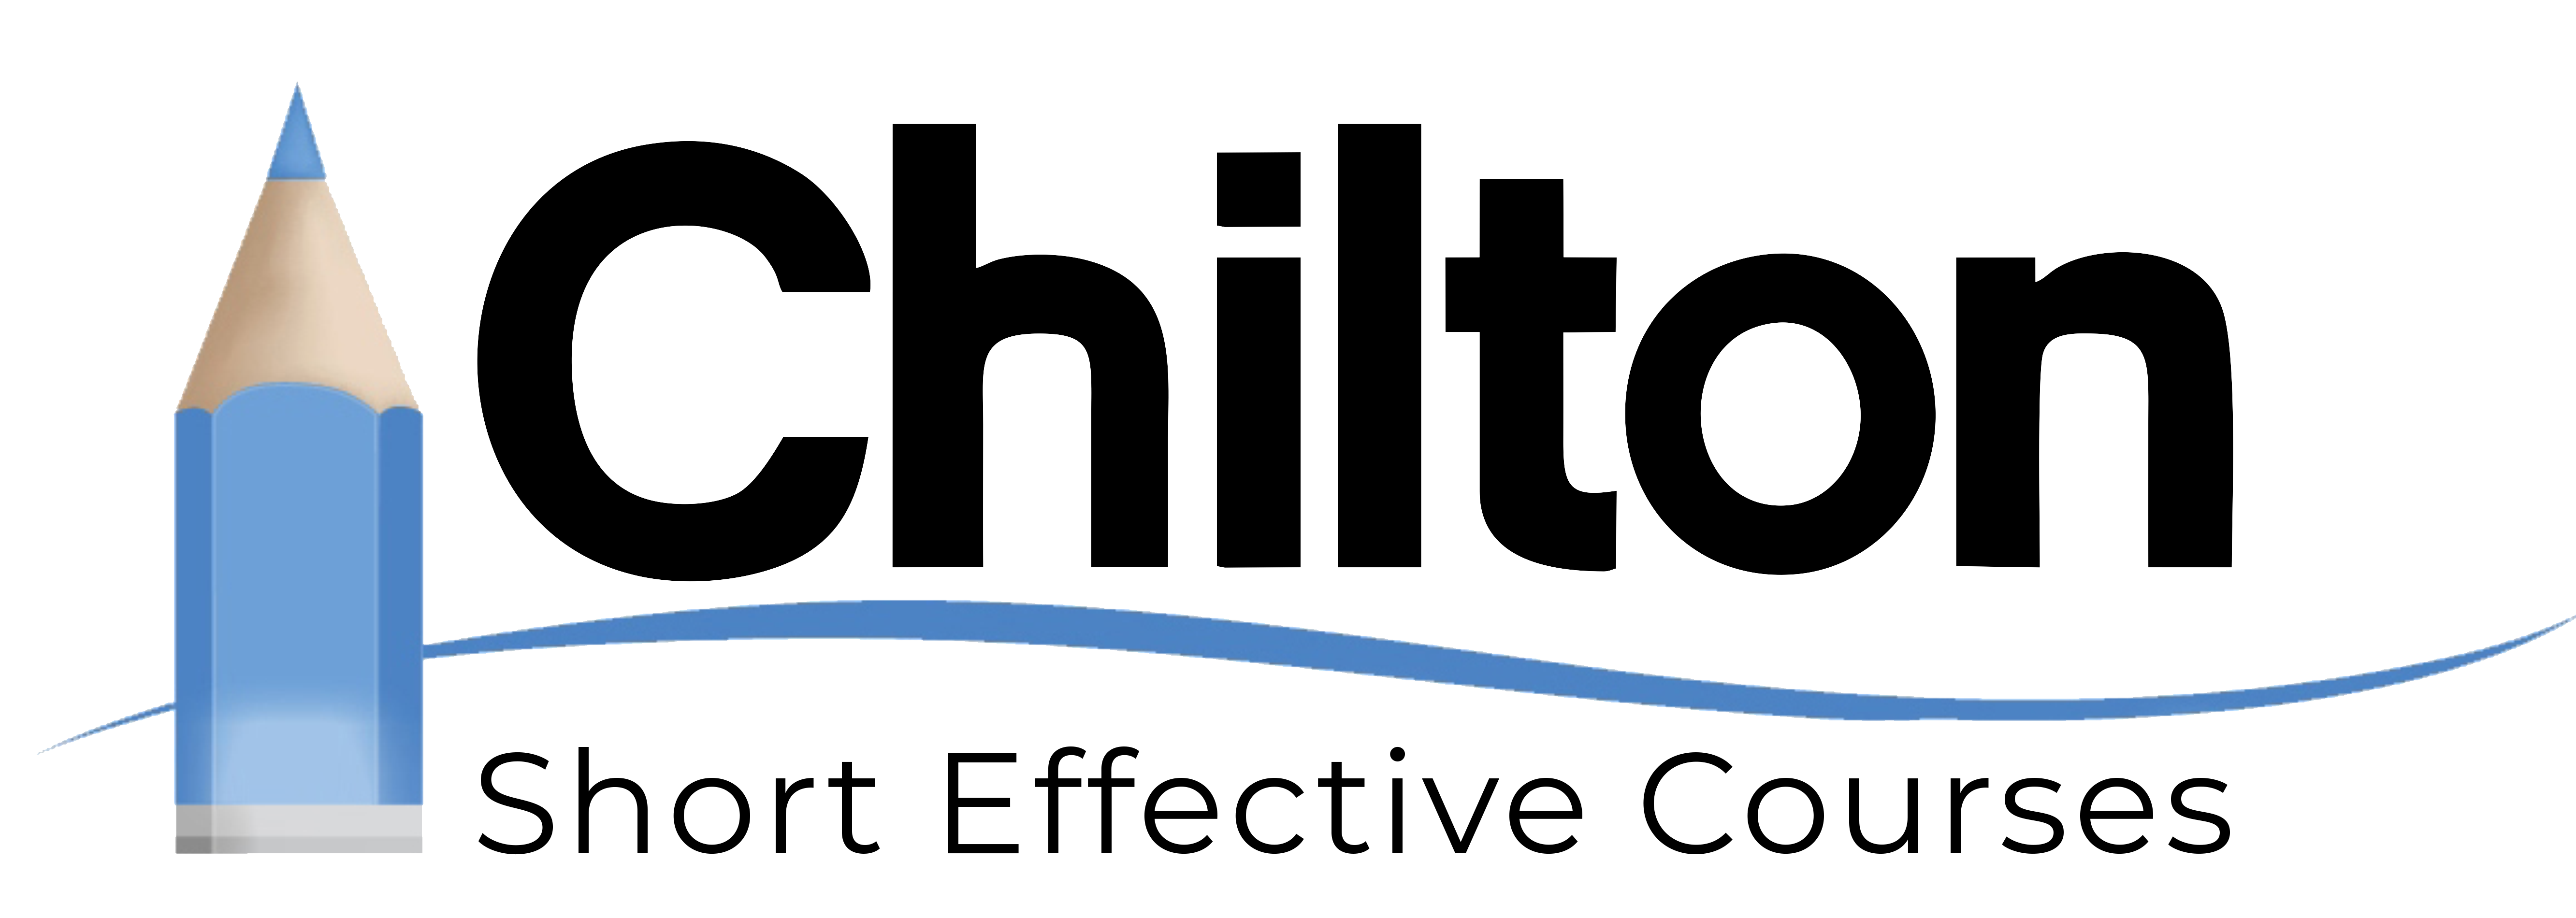 Chilton logo